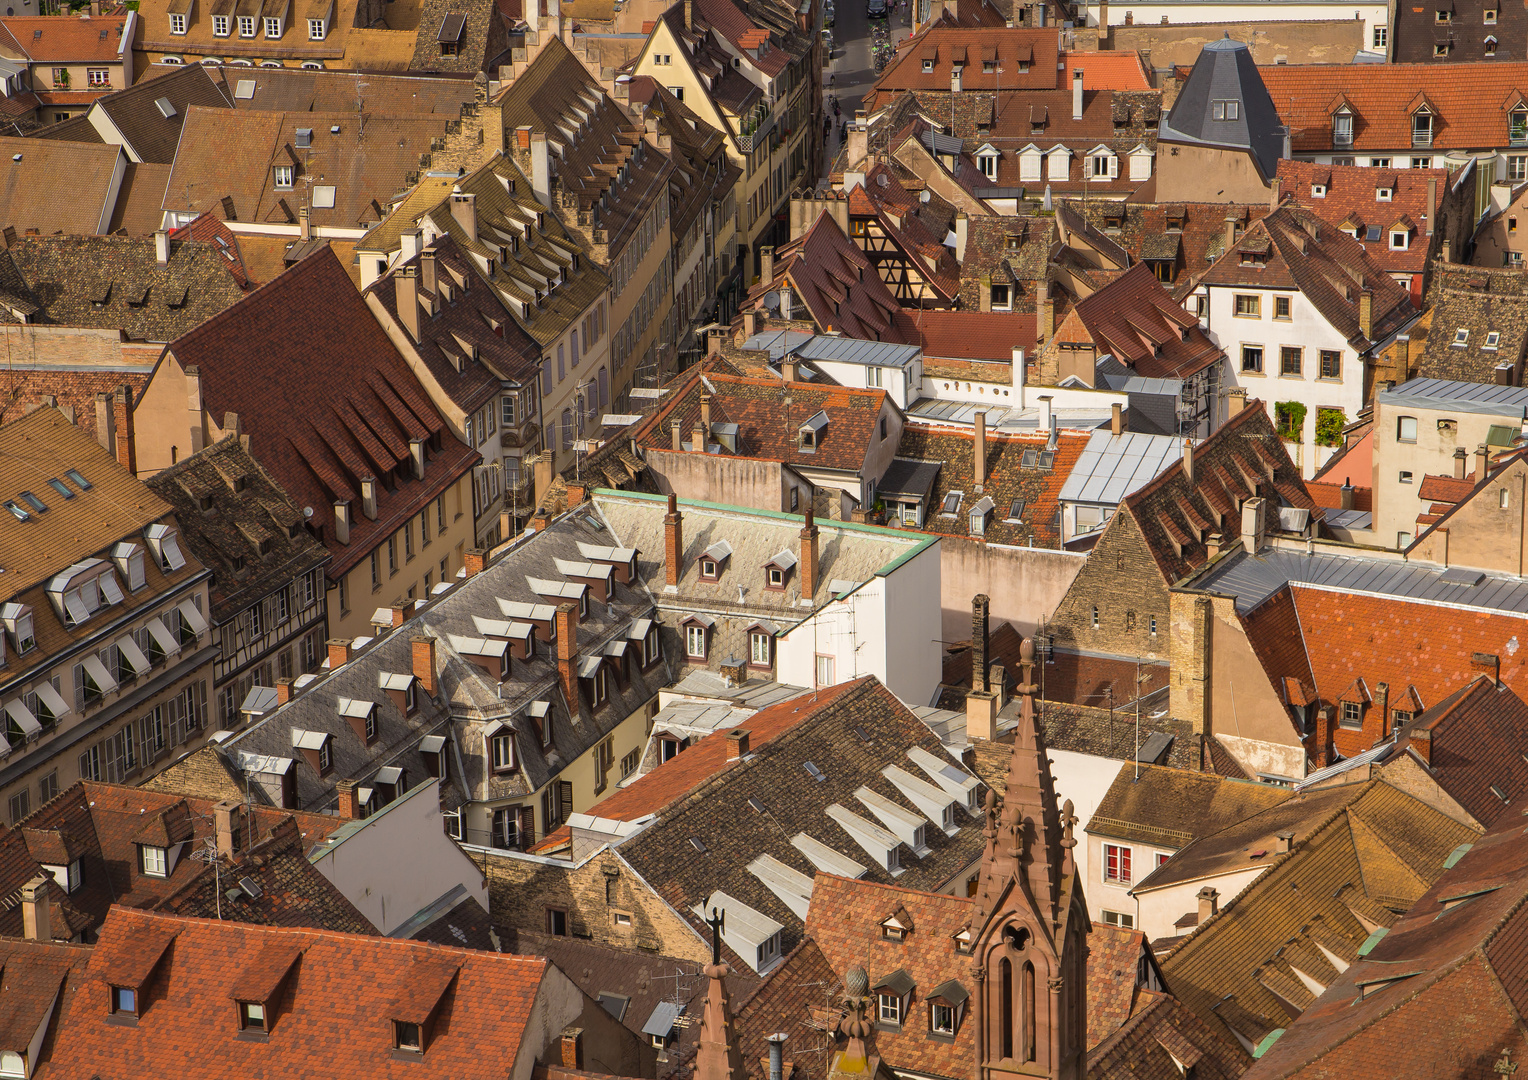 Über den Dächern von Strasbourg